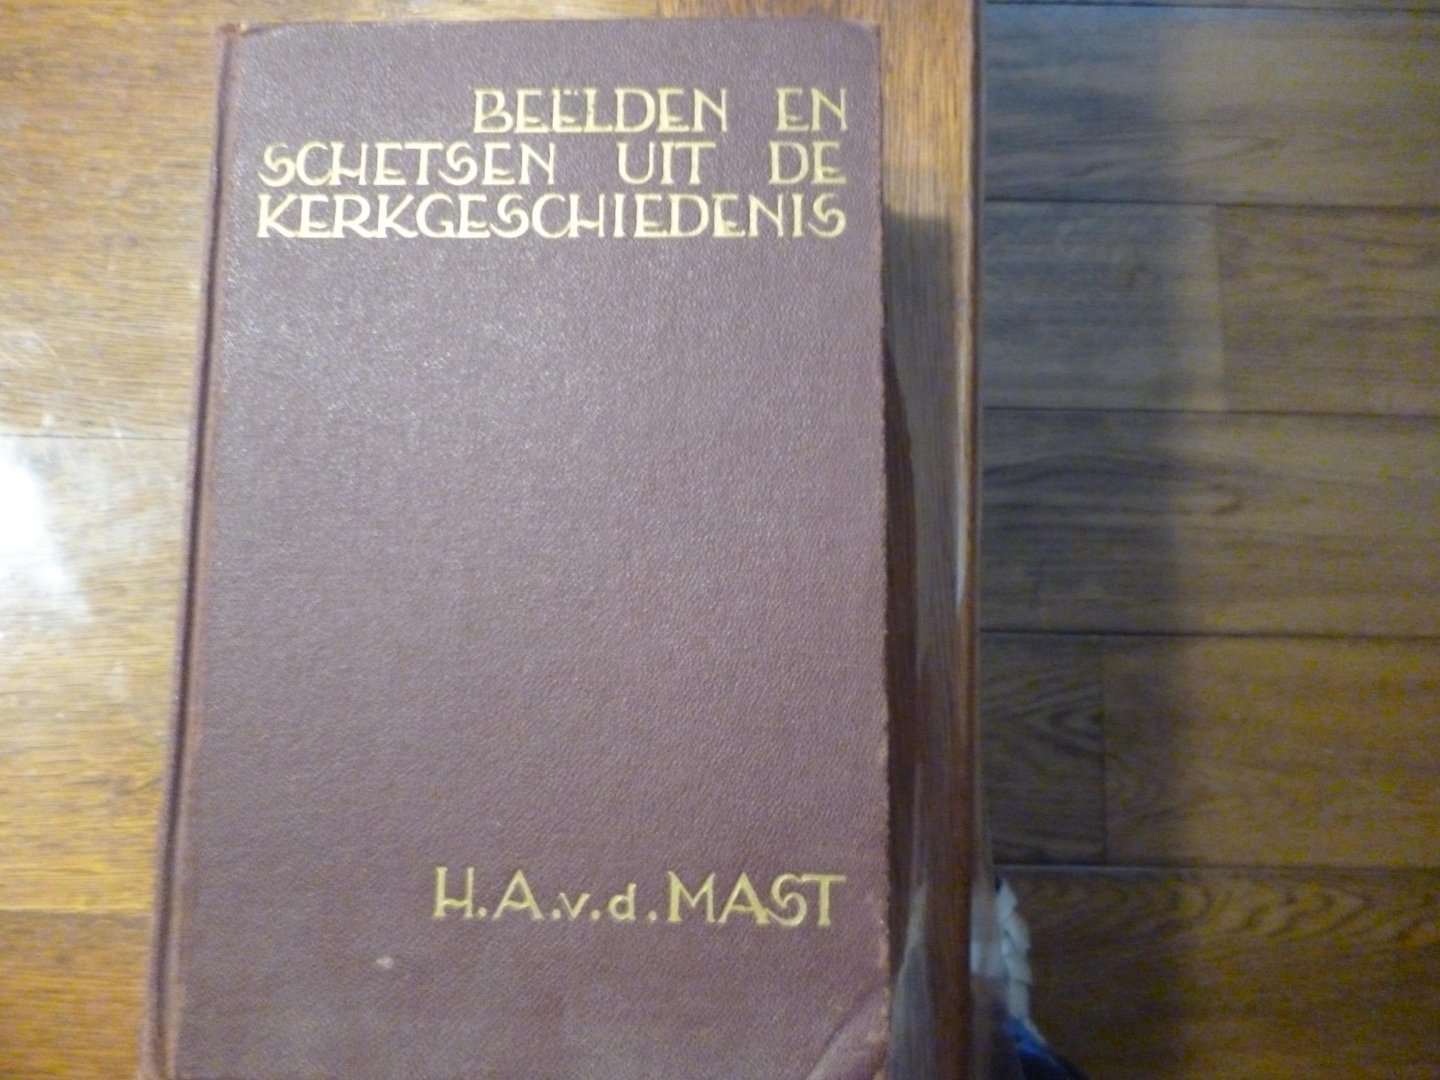 Mast van der H.A. - Beelden en schetsen uit de kerkgeschiedenis